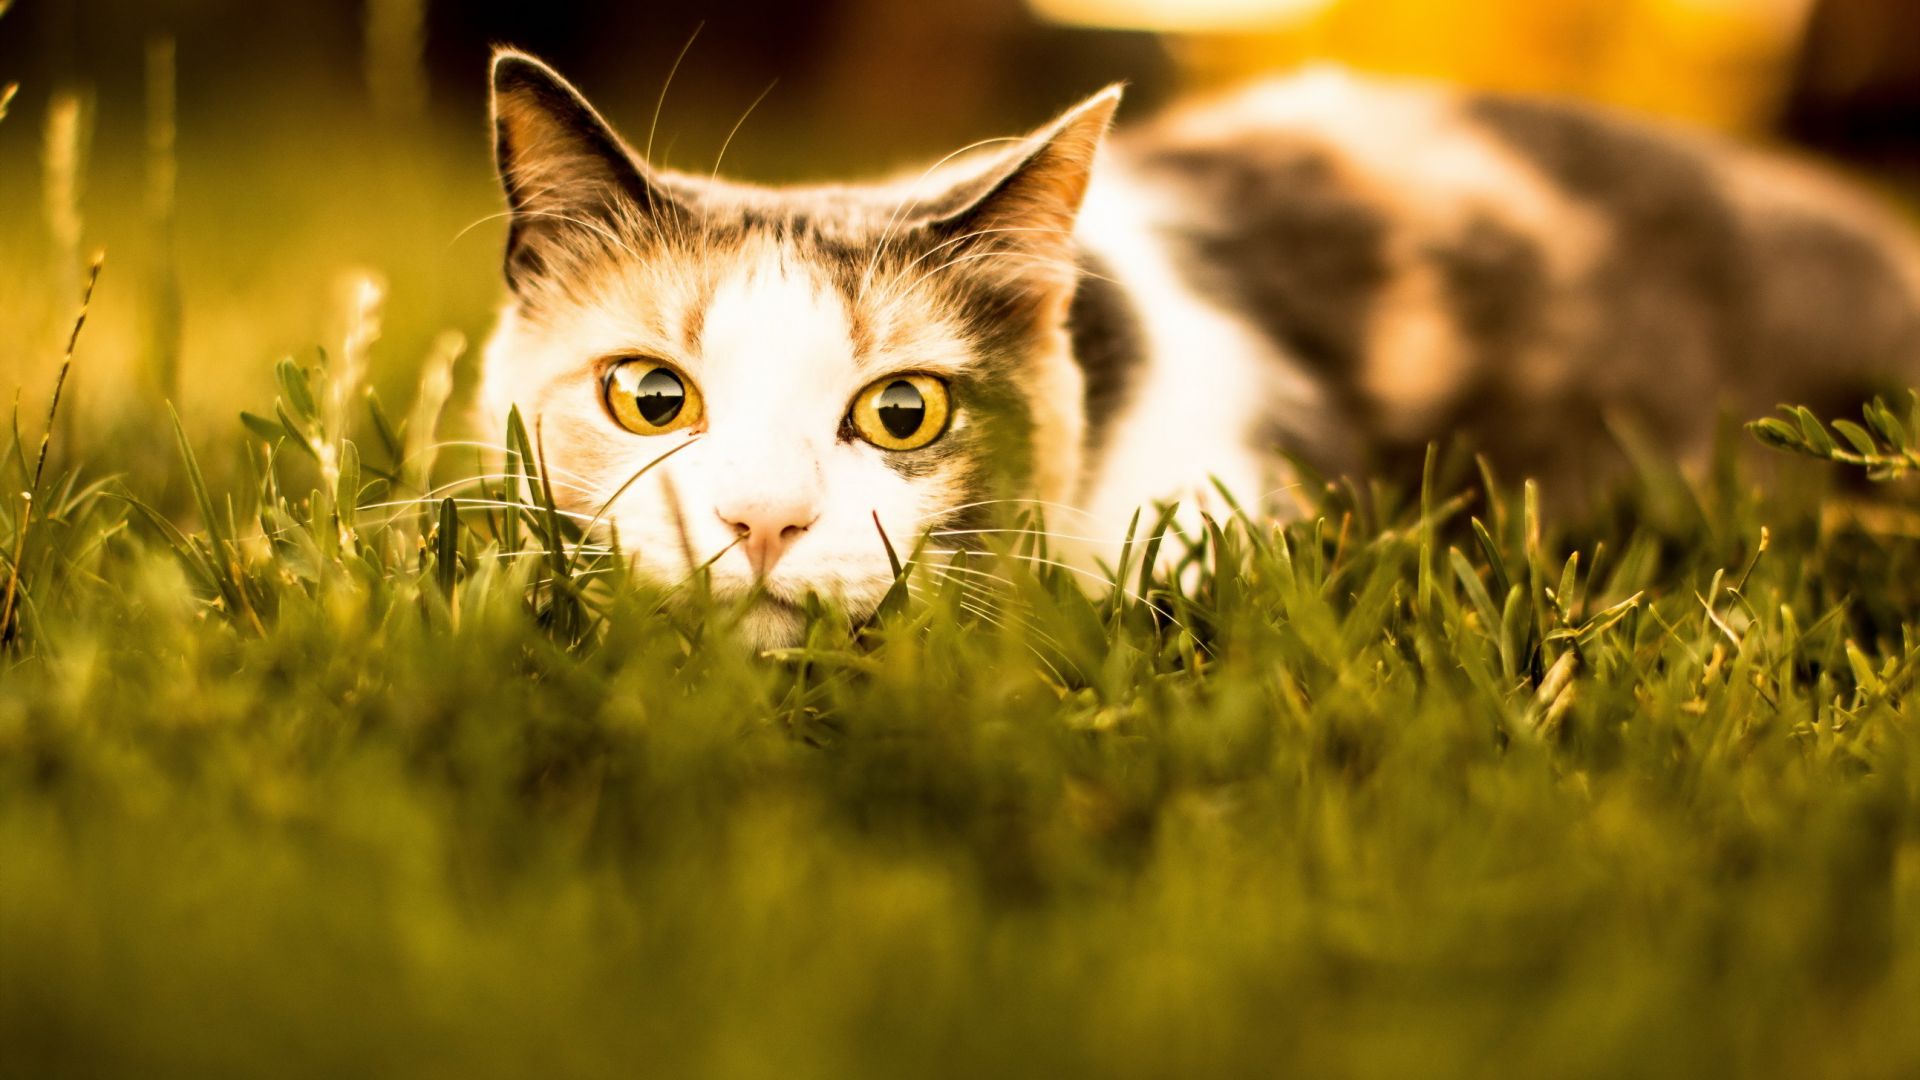 Wallpaper Cute, kitten in grass, muzzle